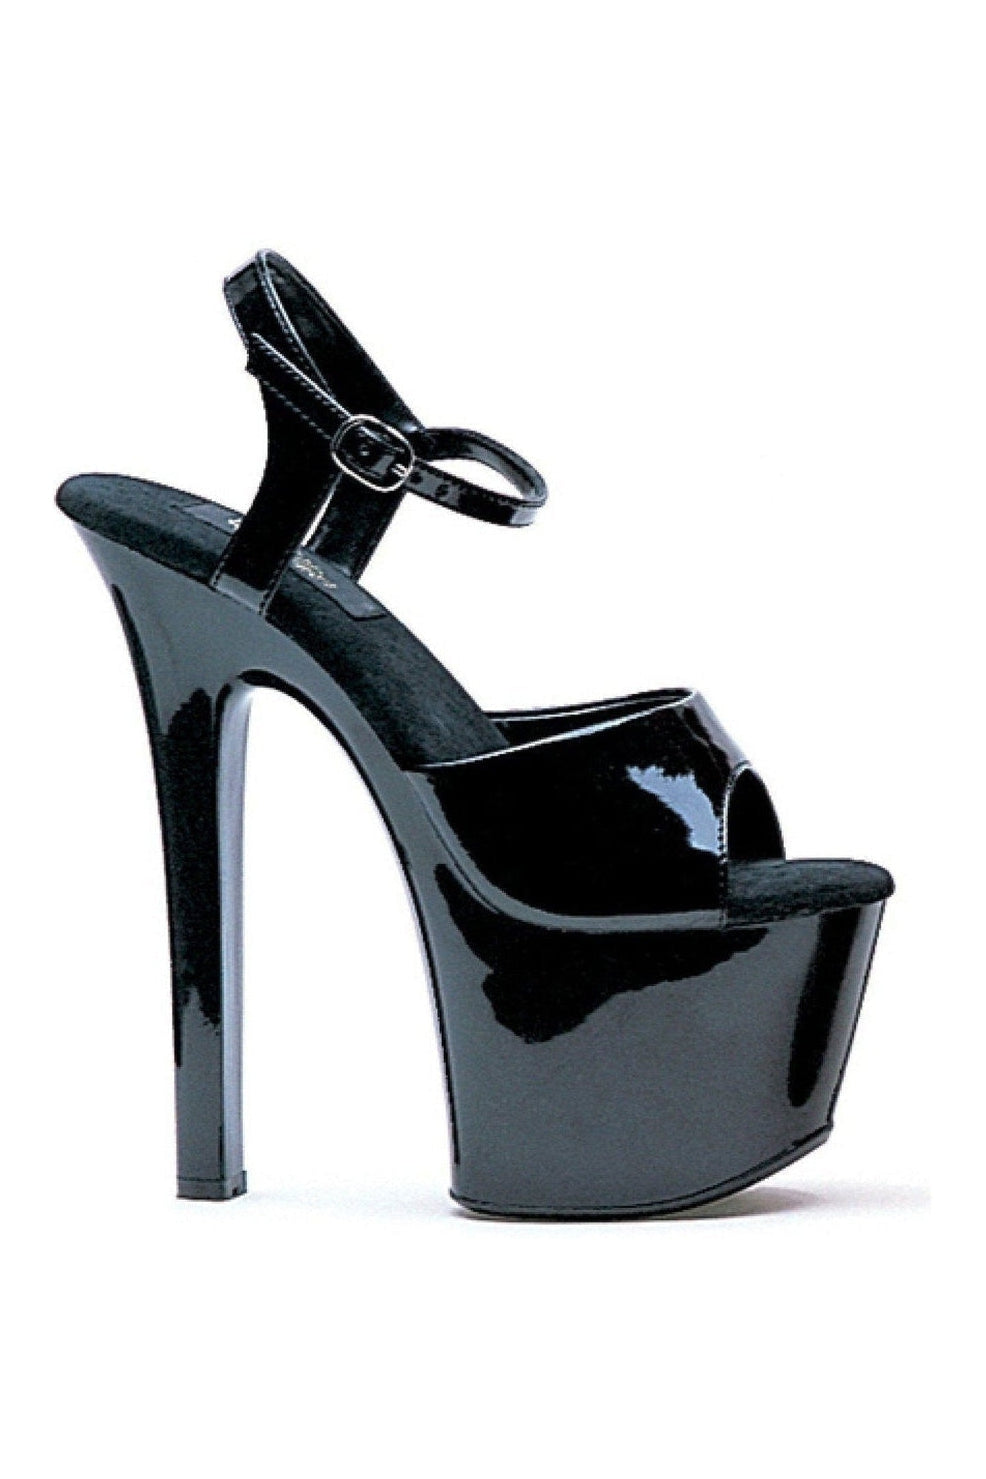 711-FLIRT Stripper Sandal | Black Patent-Ellie Shoes-SEXYSHOES.COM